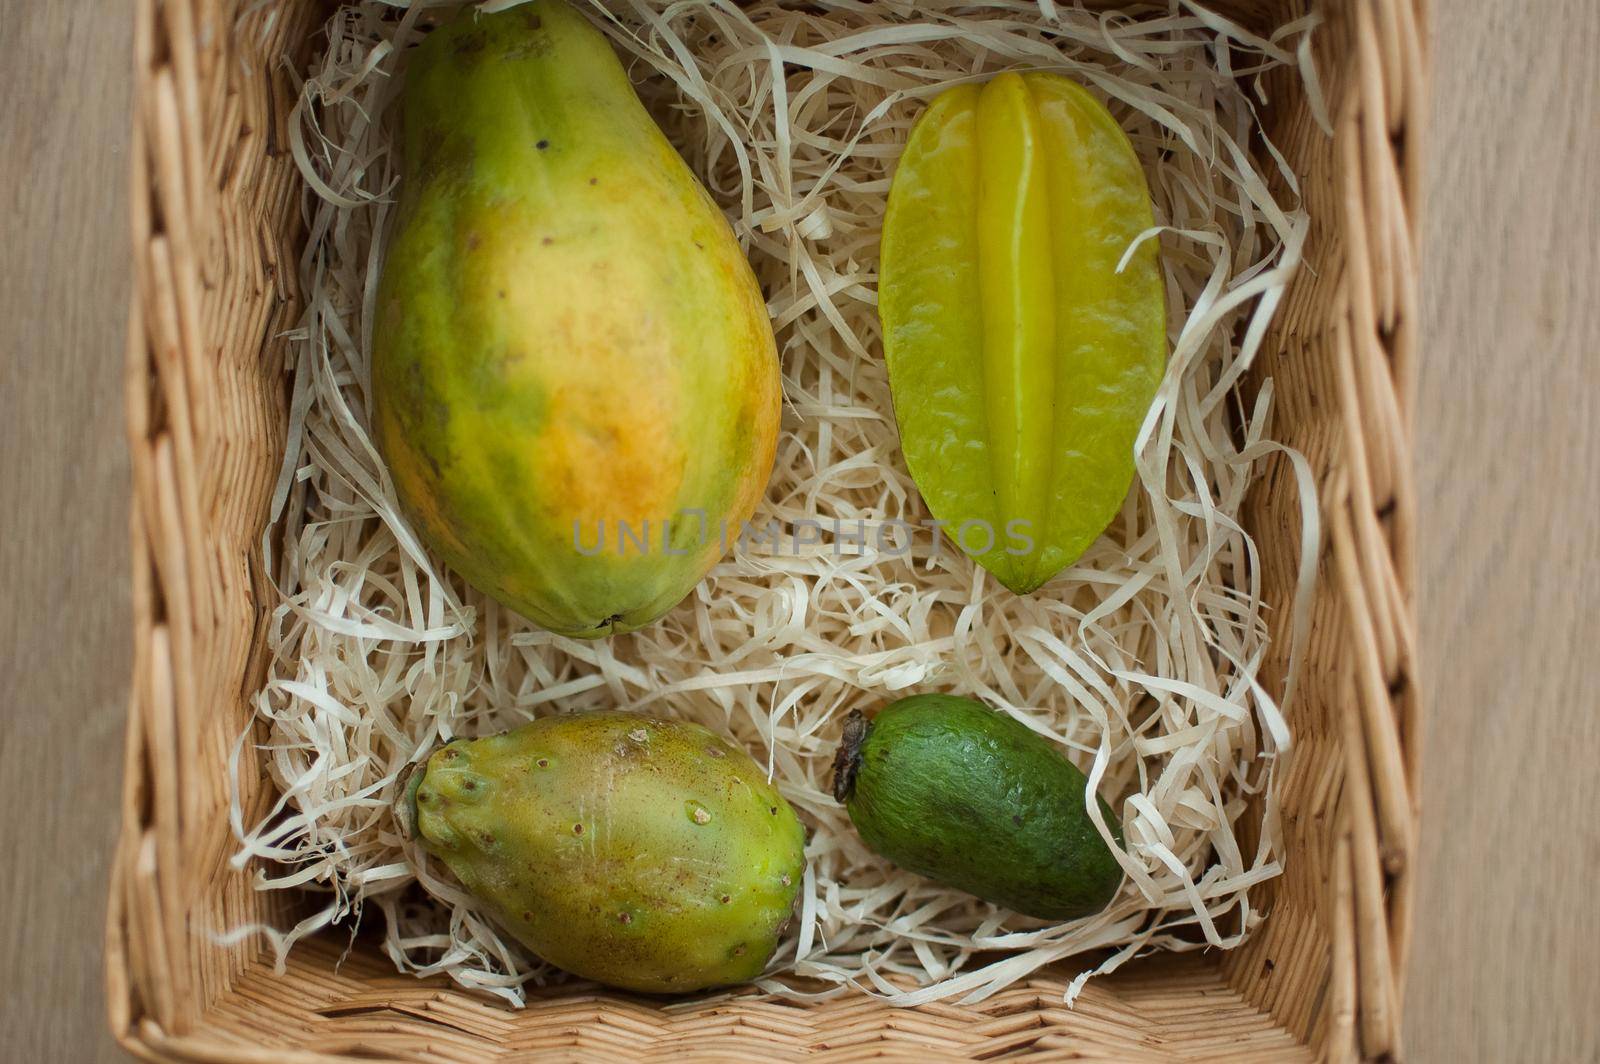 Big basket of fresh tropical fruits, carambola, papaya, feijoa, prickly pear or opuntia. Exotic fruits, healthy eating concept by balinska_lv